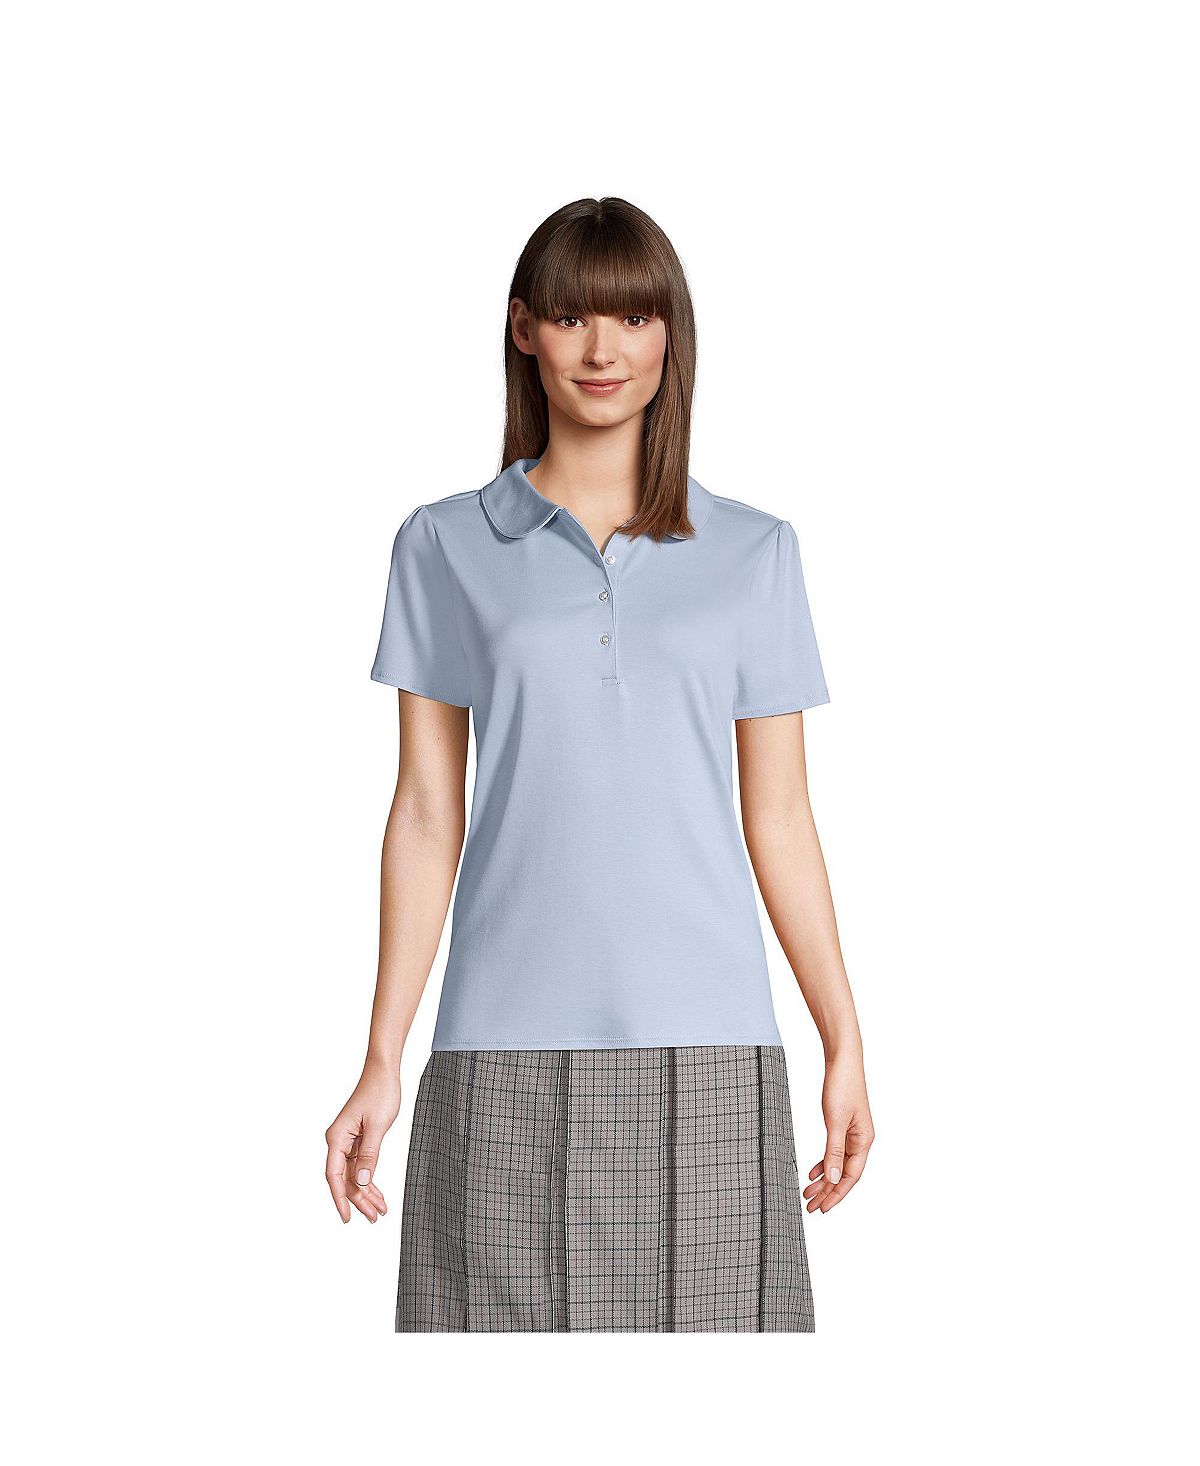 Школьная форма женская рубашка поло с коротким рукавом и воротником Питера Пэна Lands' End, синий